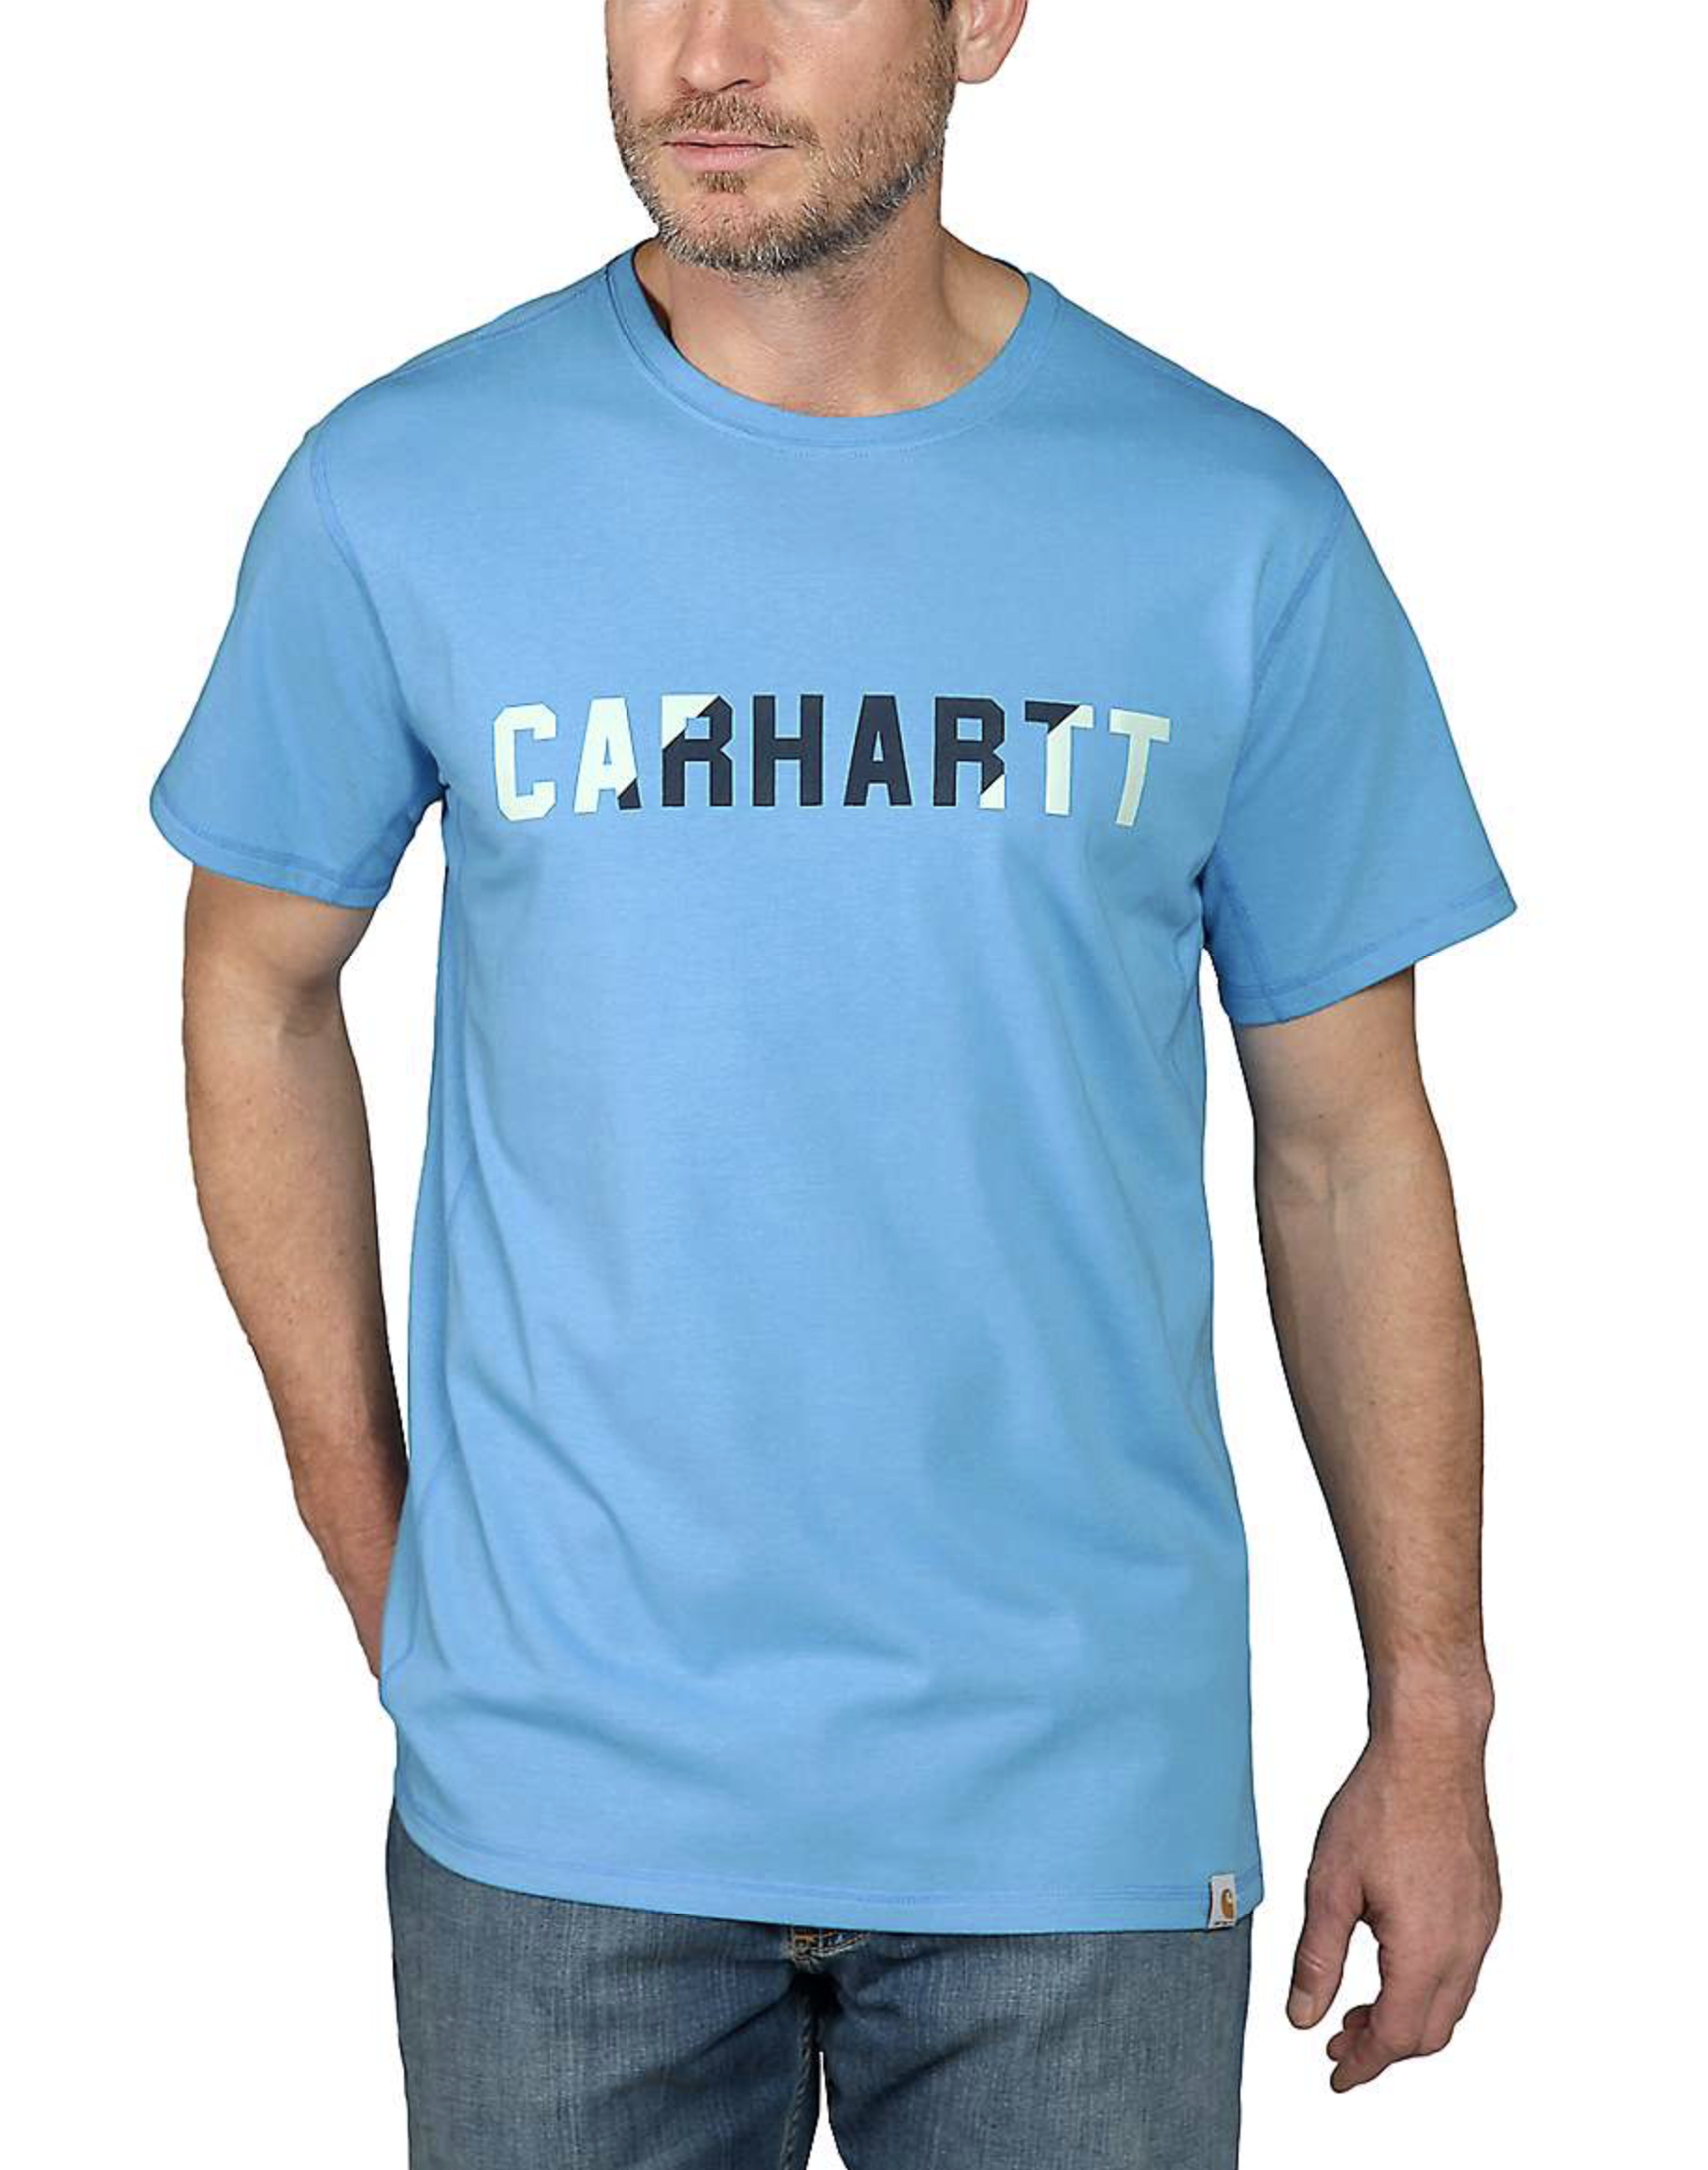 Verkoelend T-shirt met uitstekende luchtcirculatie